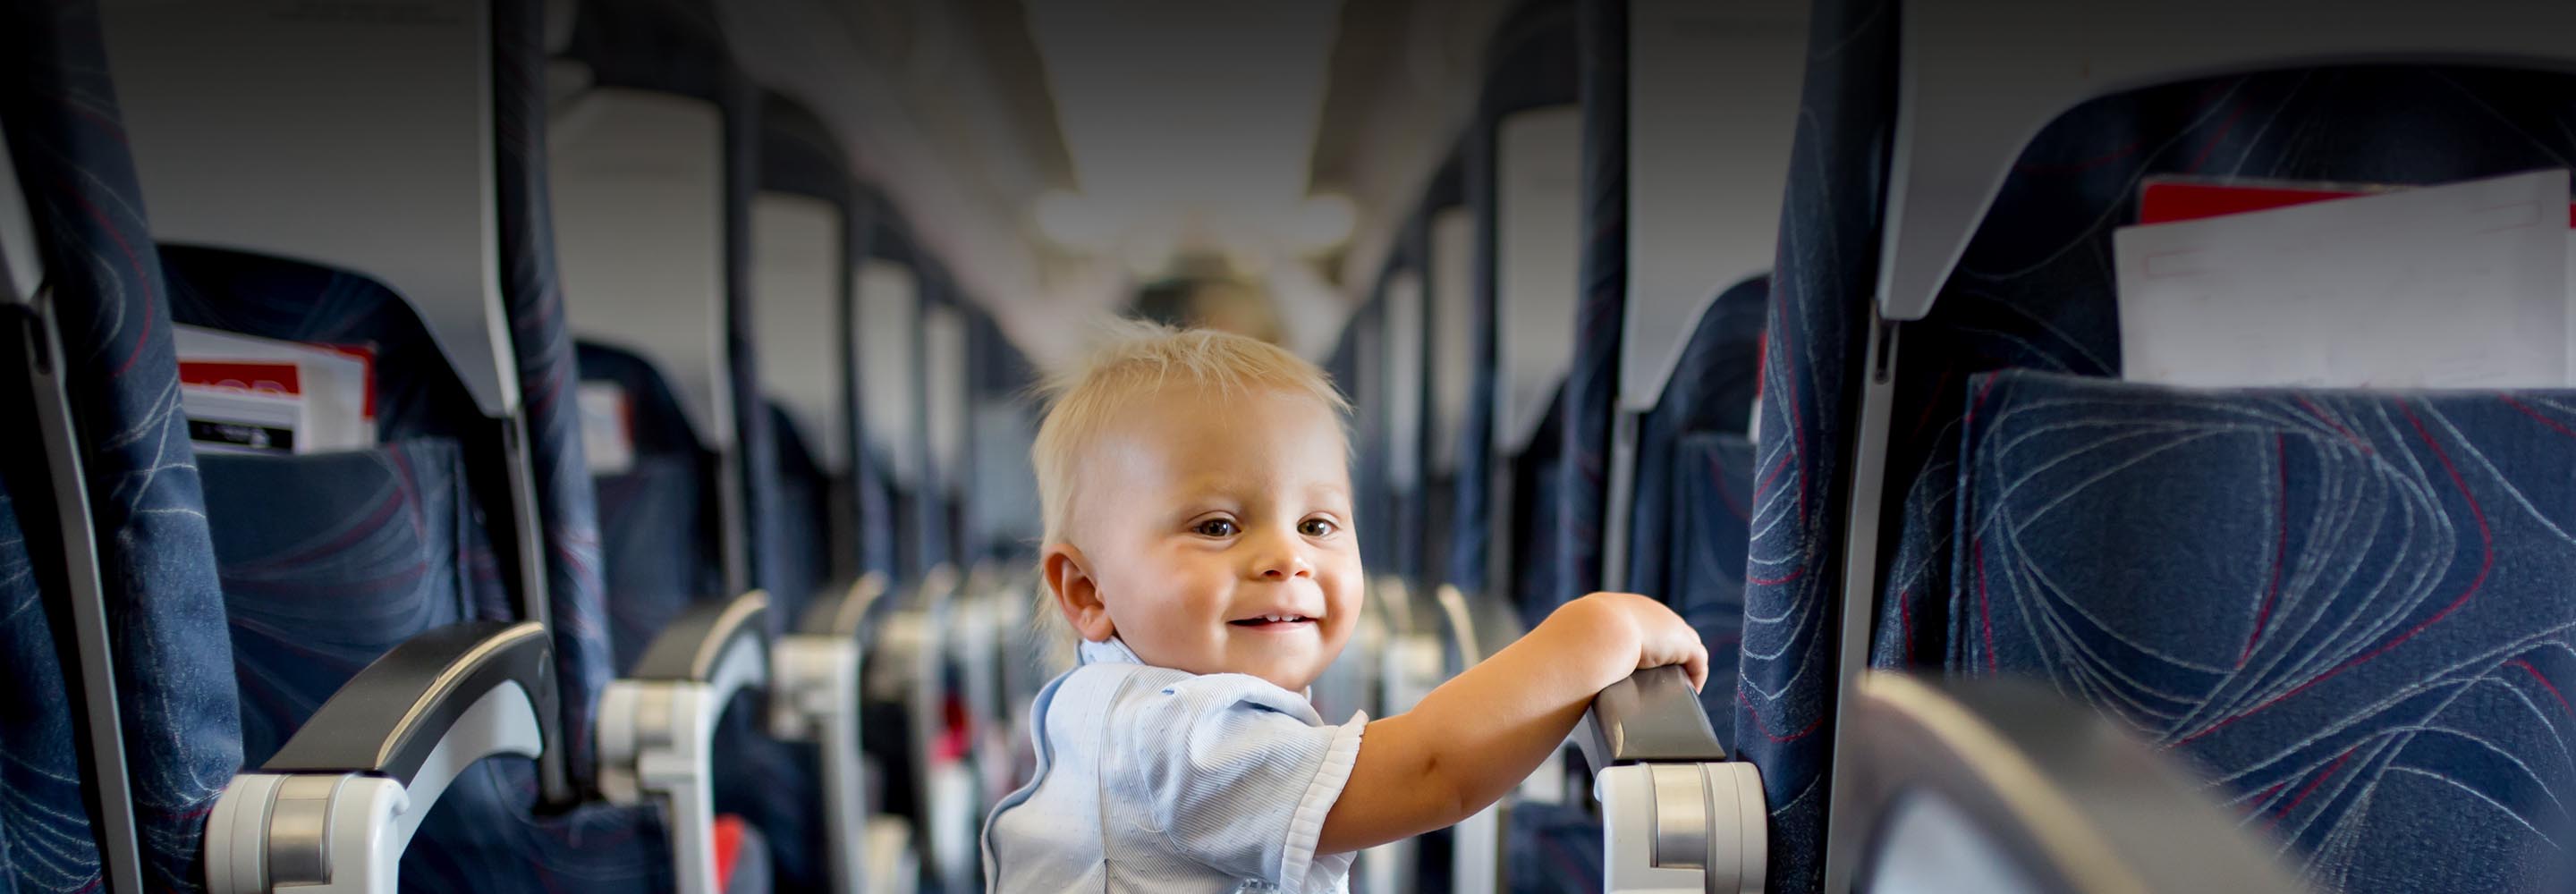 Что взять с собой в самолет, если летите с ребенком